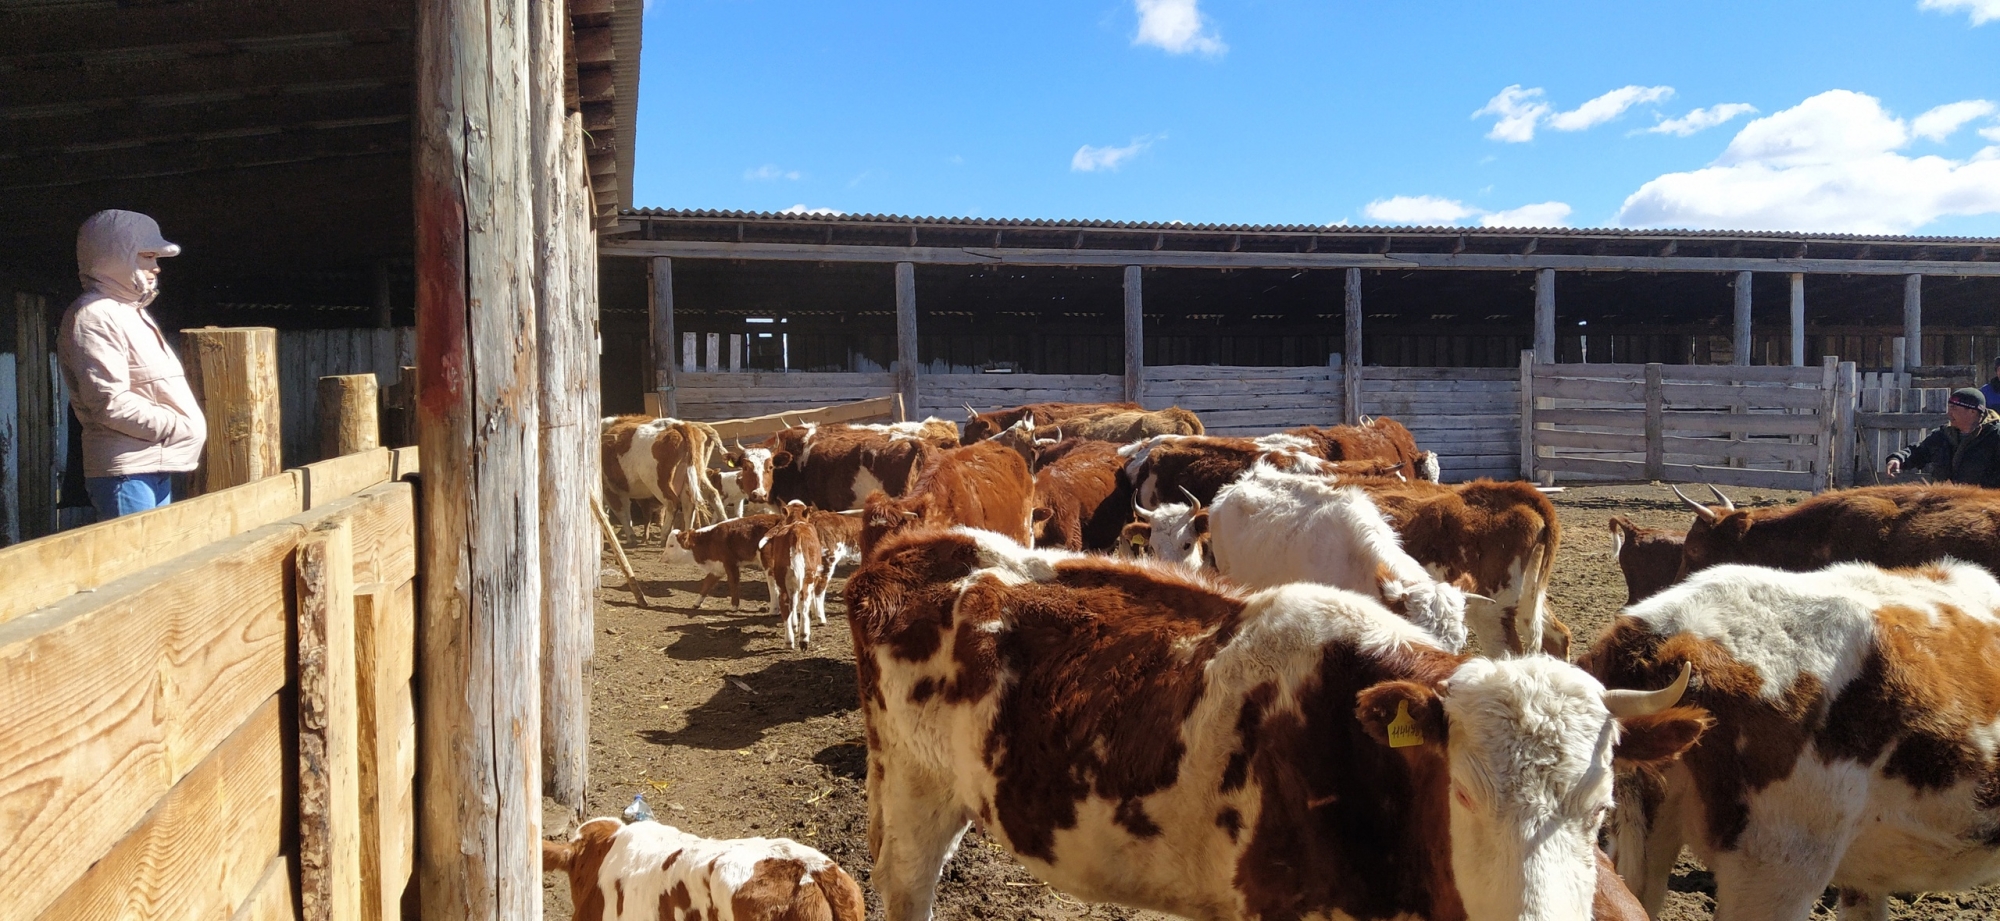 Фото В районе Бурятии отобрали коров-реципиентов для посадки эмбрионов